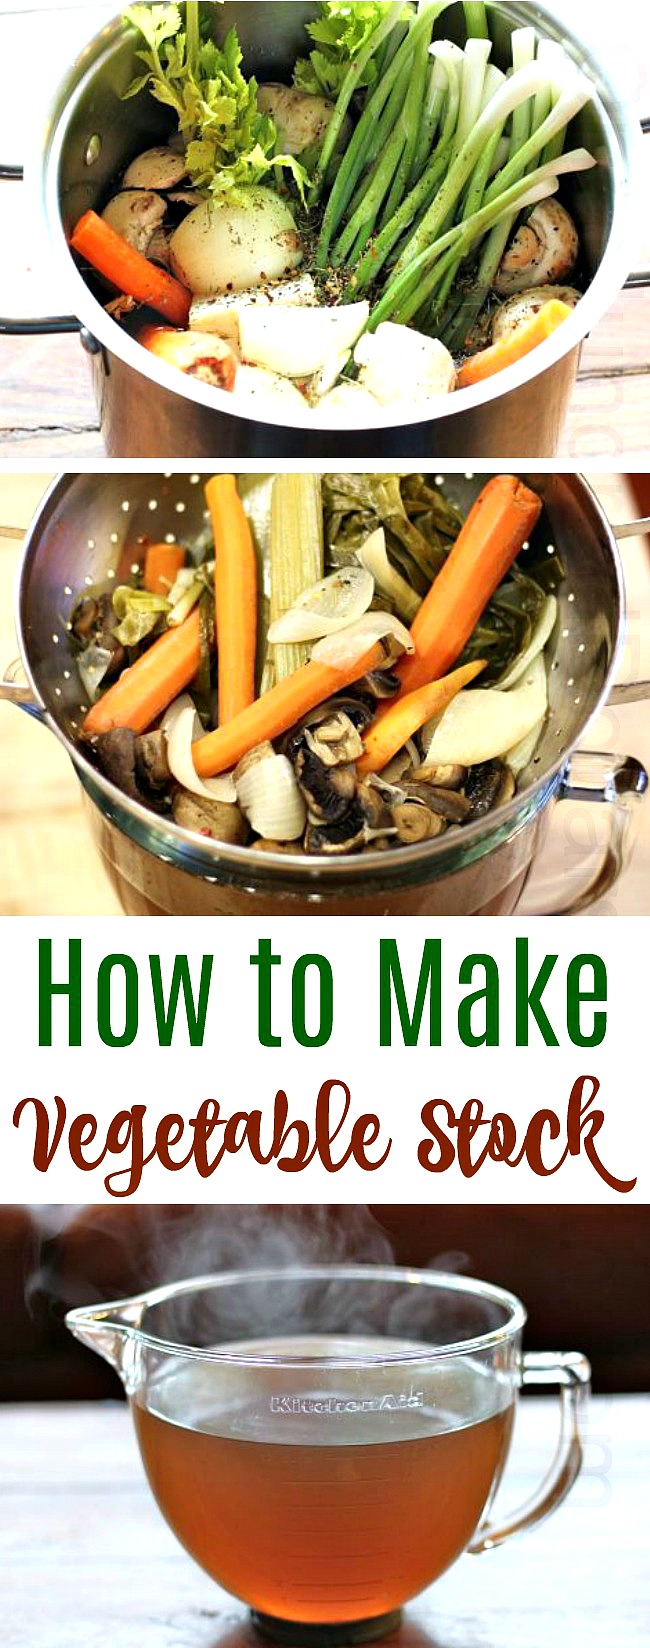 Recipe for Vegetable Stock